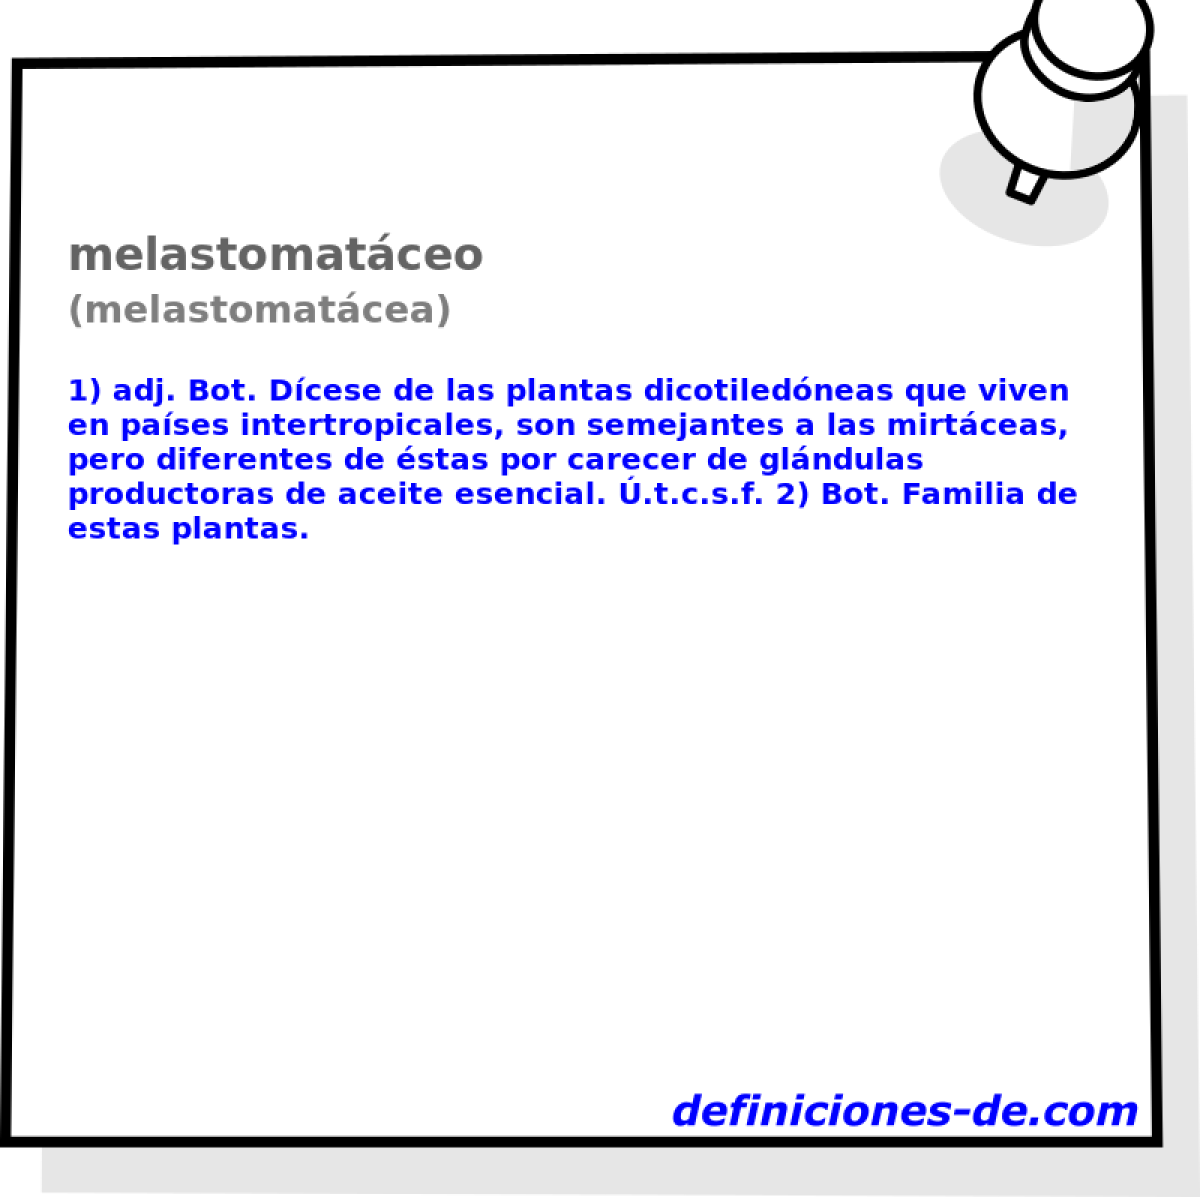 melastomatceo (melastomatcea)